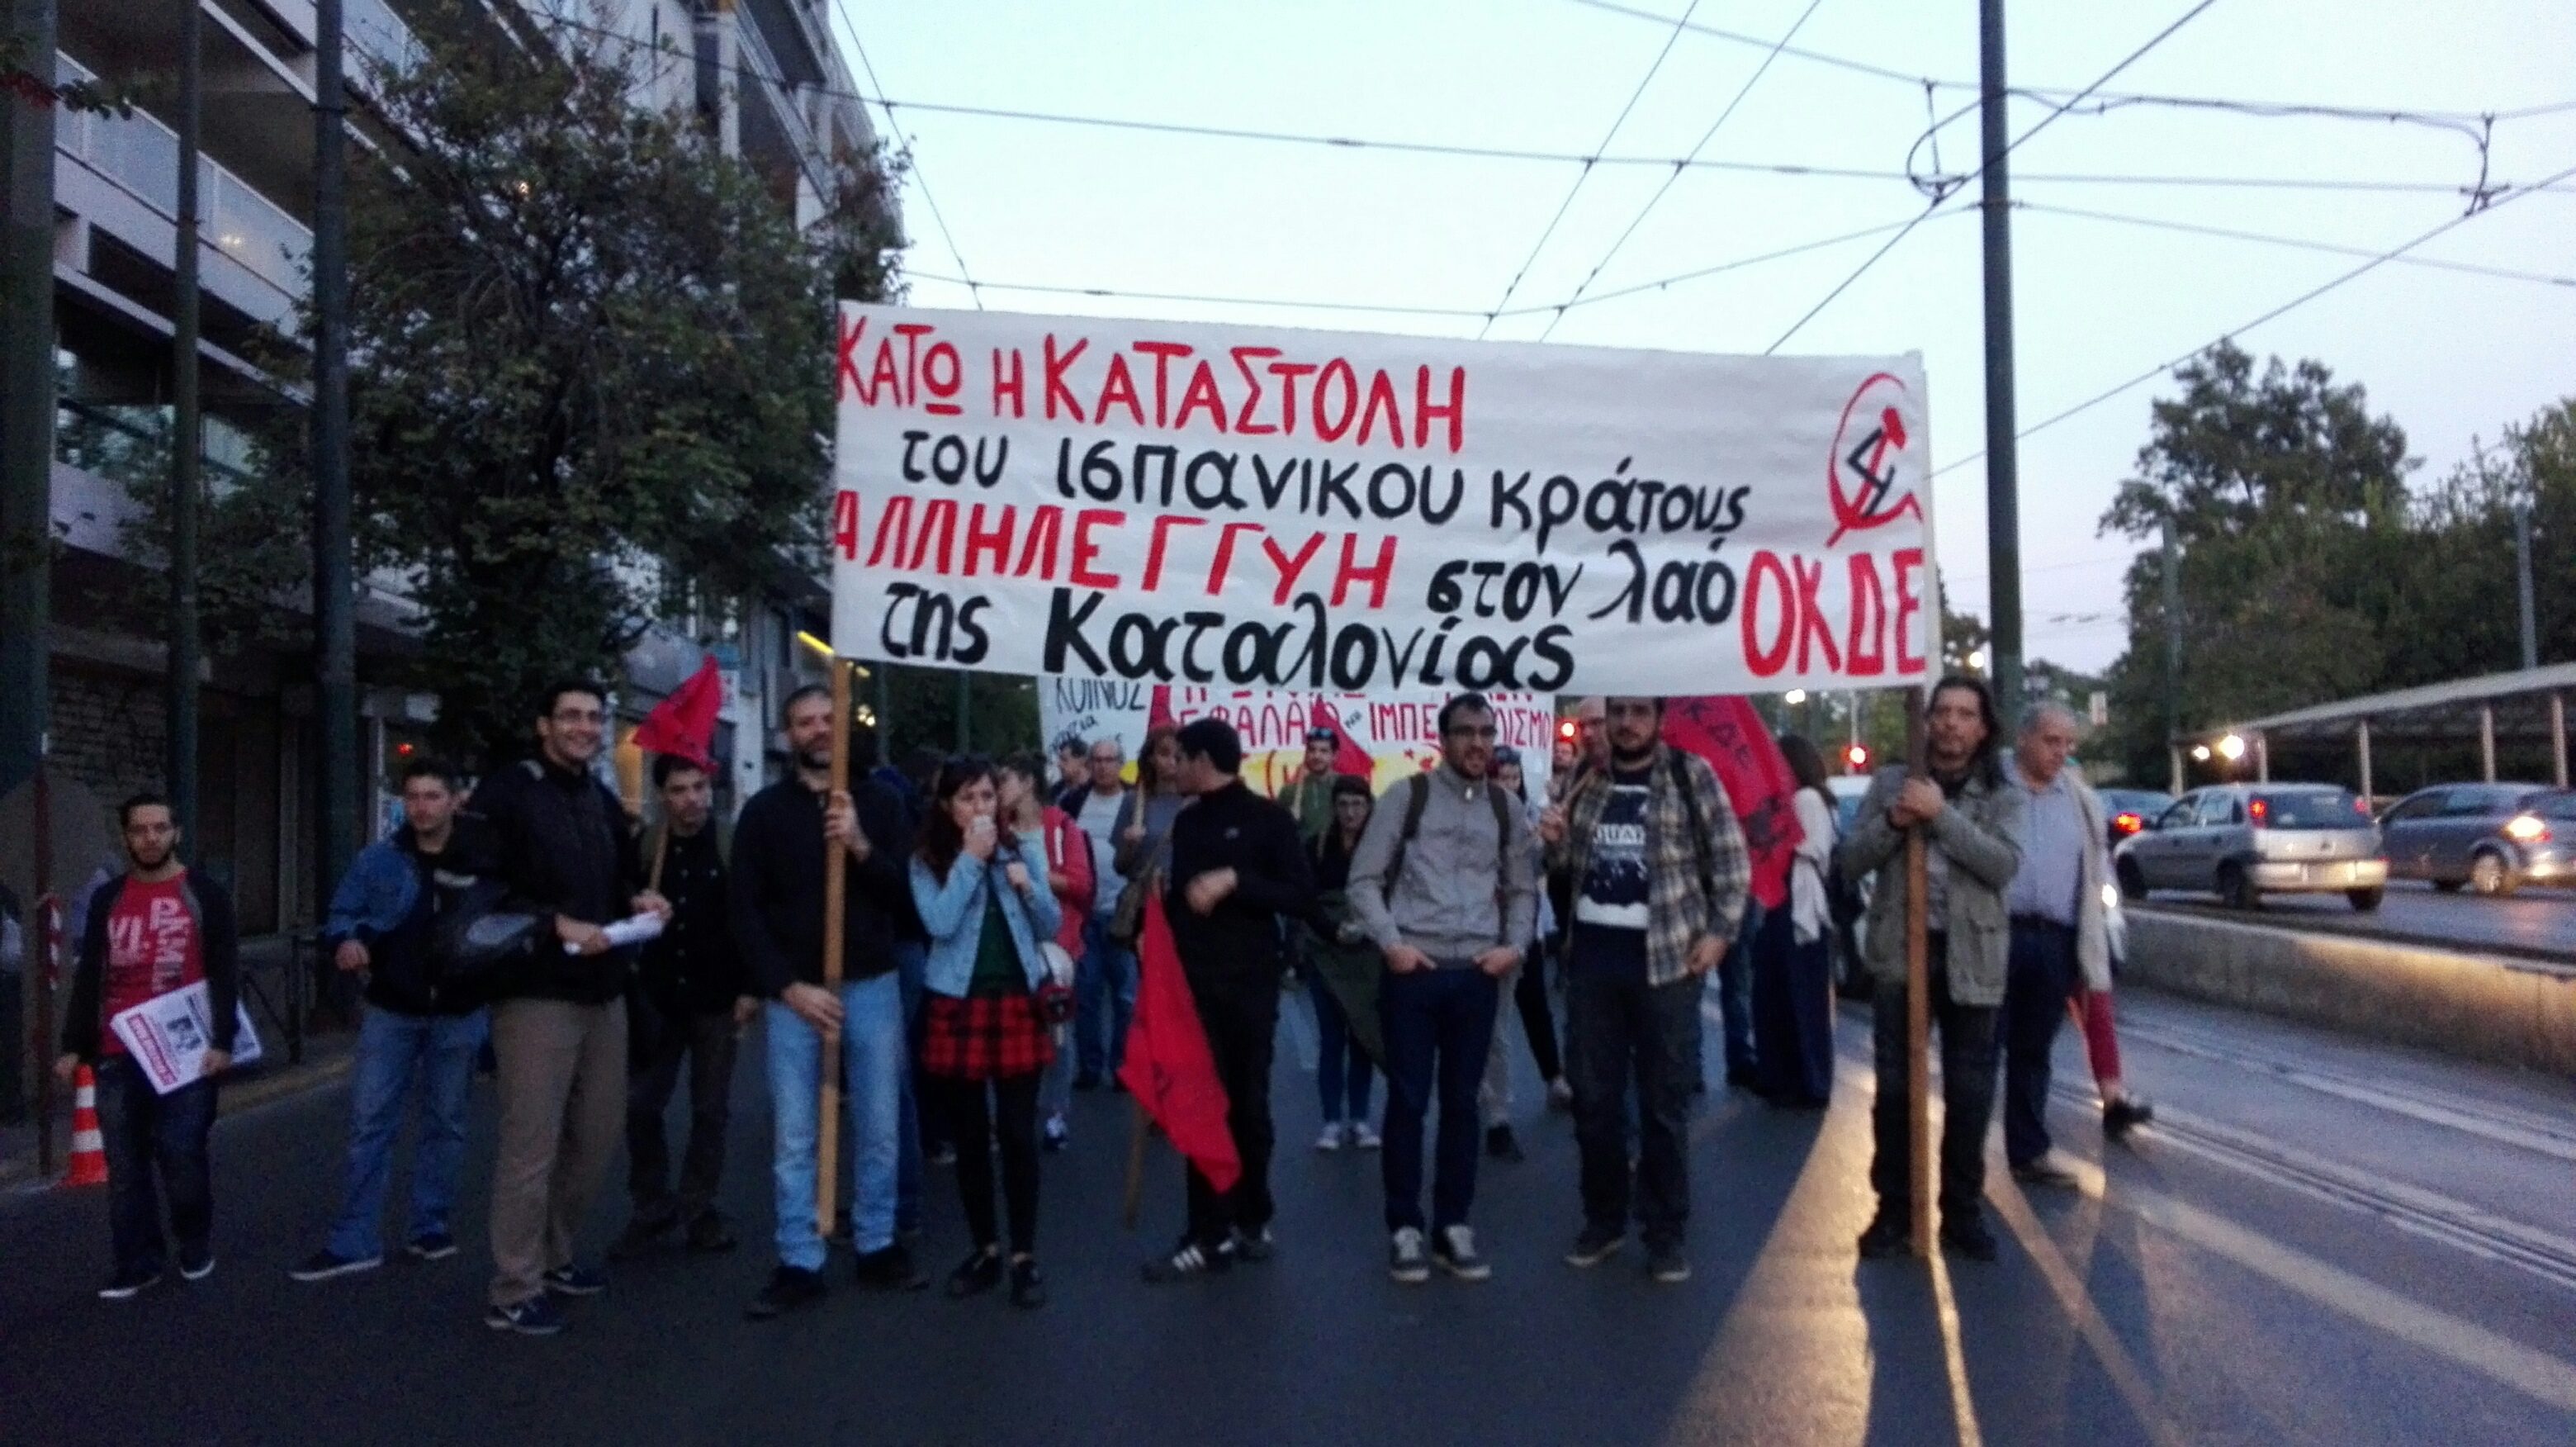 Φωτογραφίες & video από τη Διαδήλωση Αλληλεγ-γύης στον λαό της Καταλονίας στην Αθήνα (3/10)